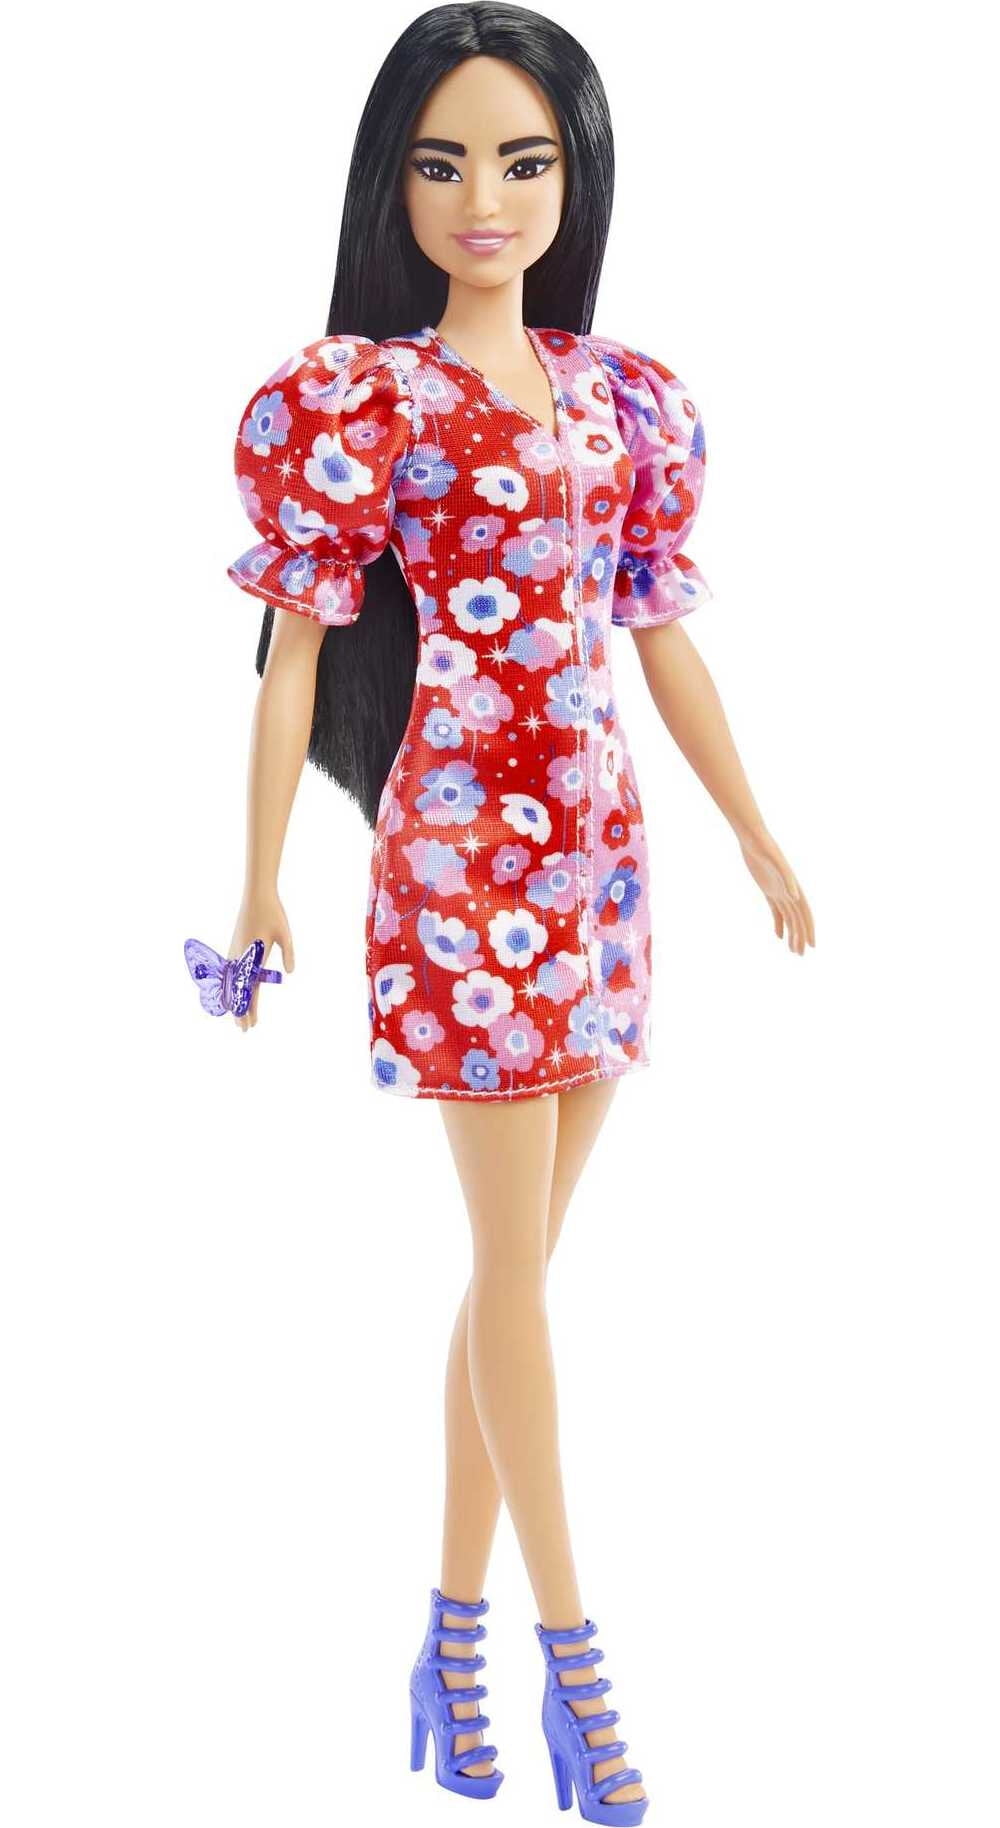 Neon Green  Flower Designer Dress New in Pkg Barbie Fashion Clothes 